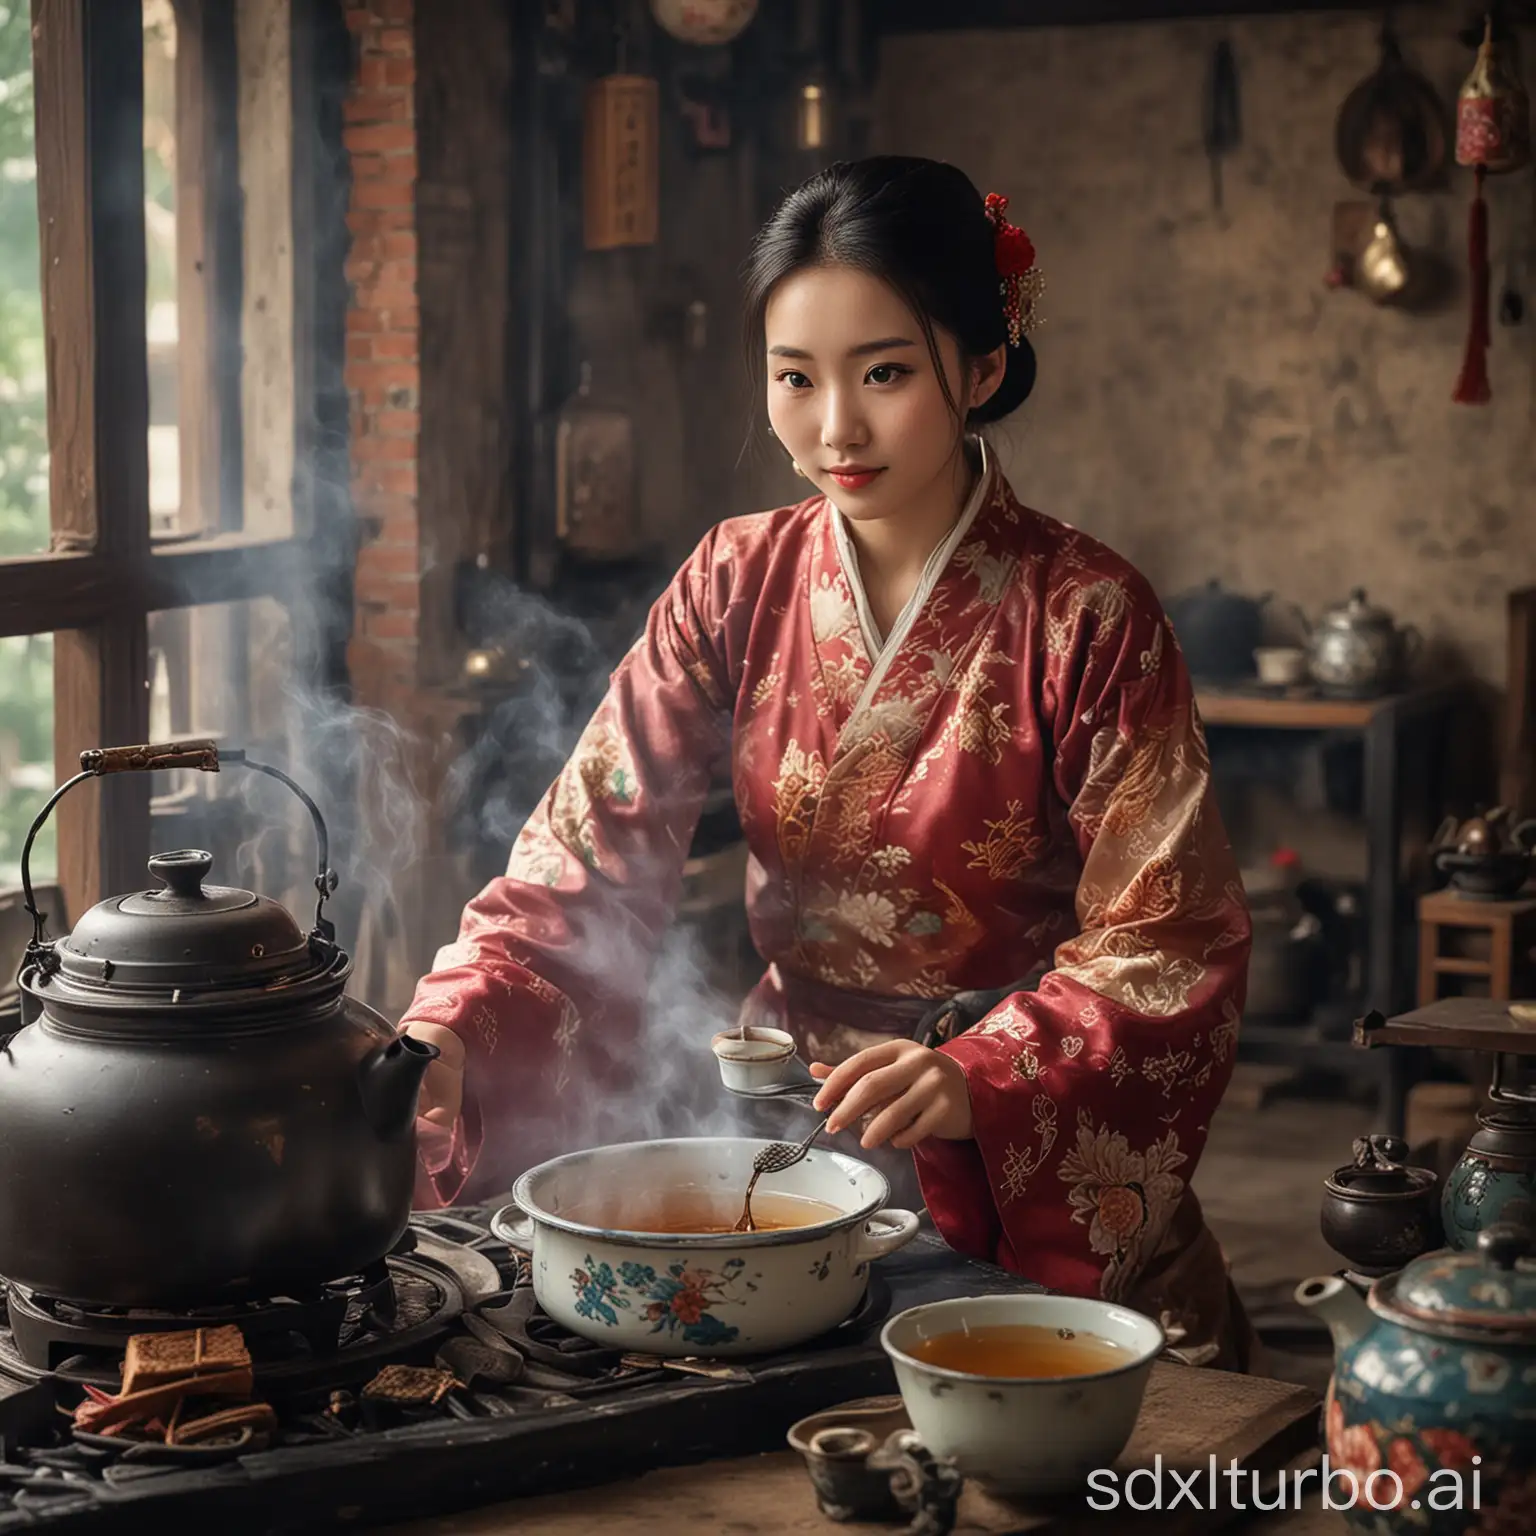 一个中国美女，在风景很美的地方围炉煮茶，好不惬意

